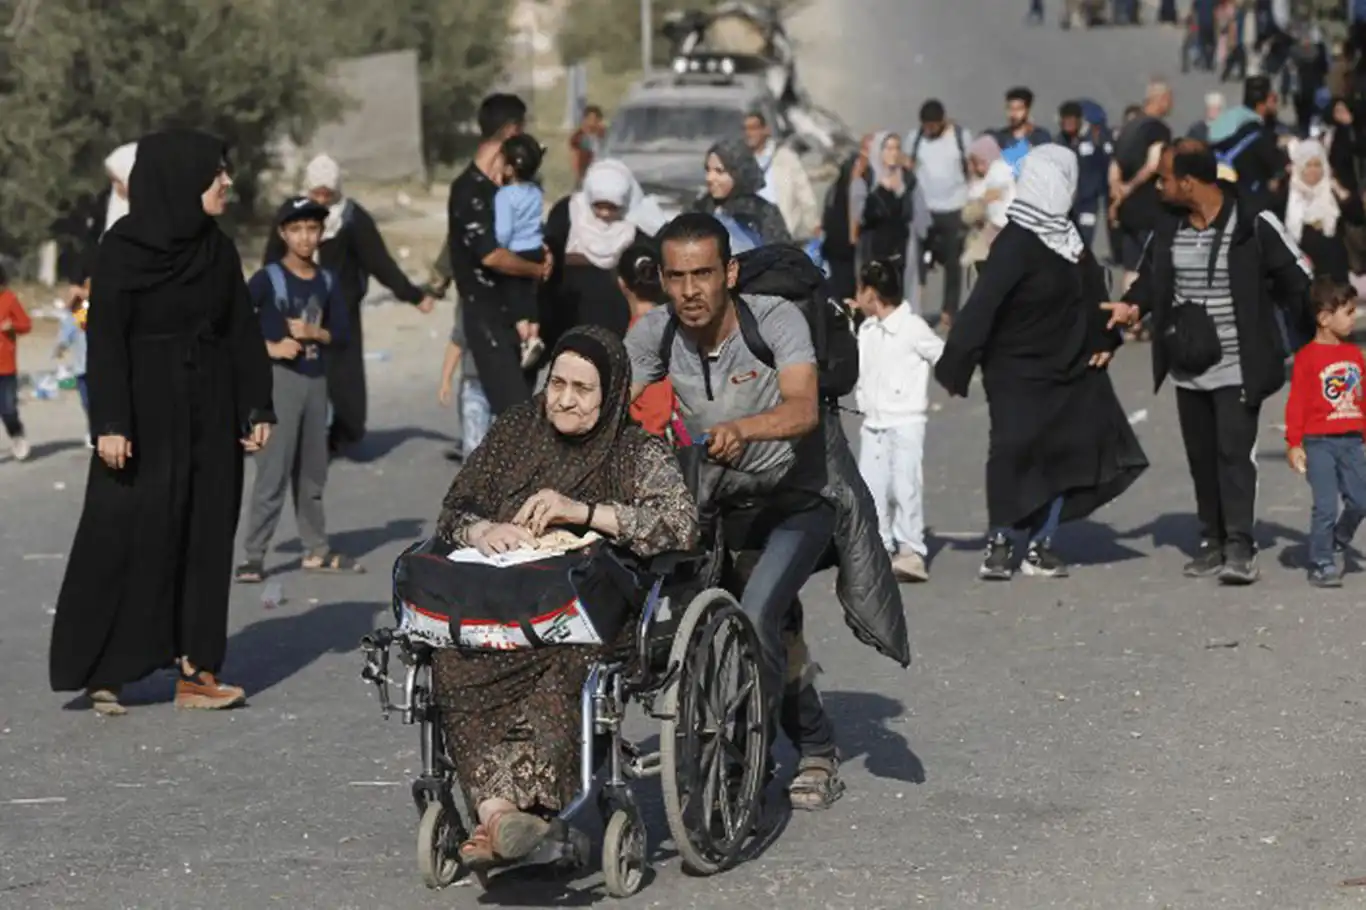 Oxfam: Gazze'nin yüzde 90'ından fazlası açlık çekiyor